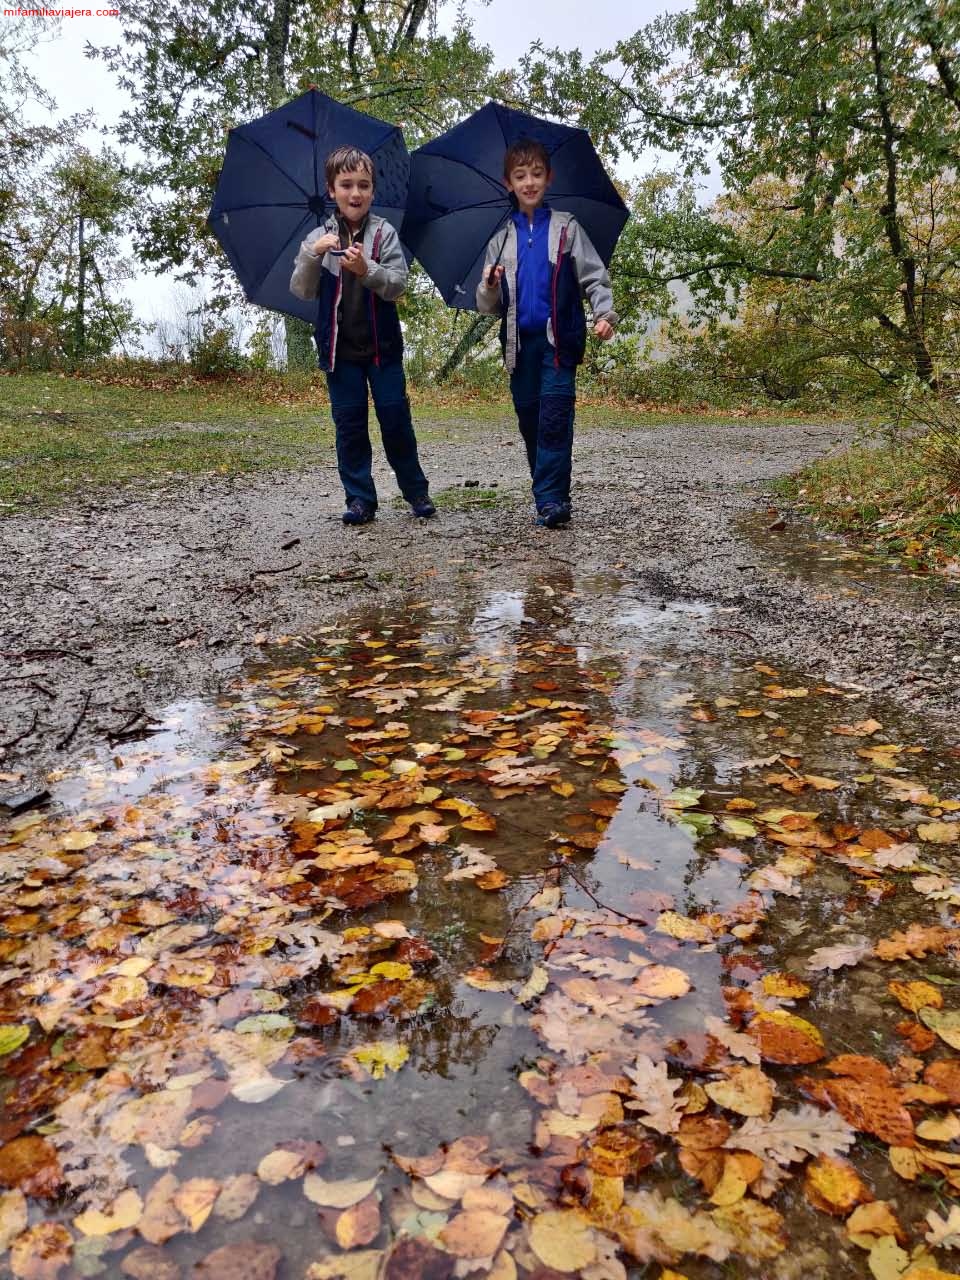 En otoño los bosques se pueden recorrer con paraguas